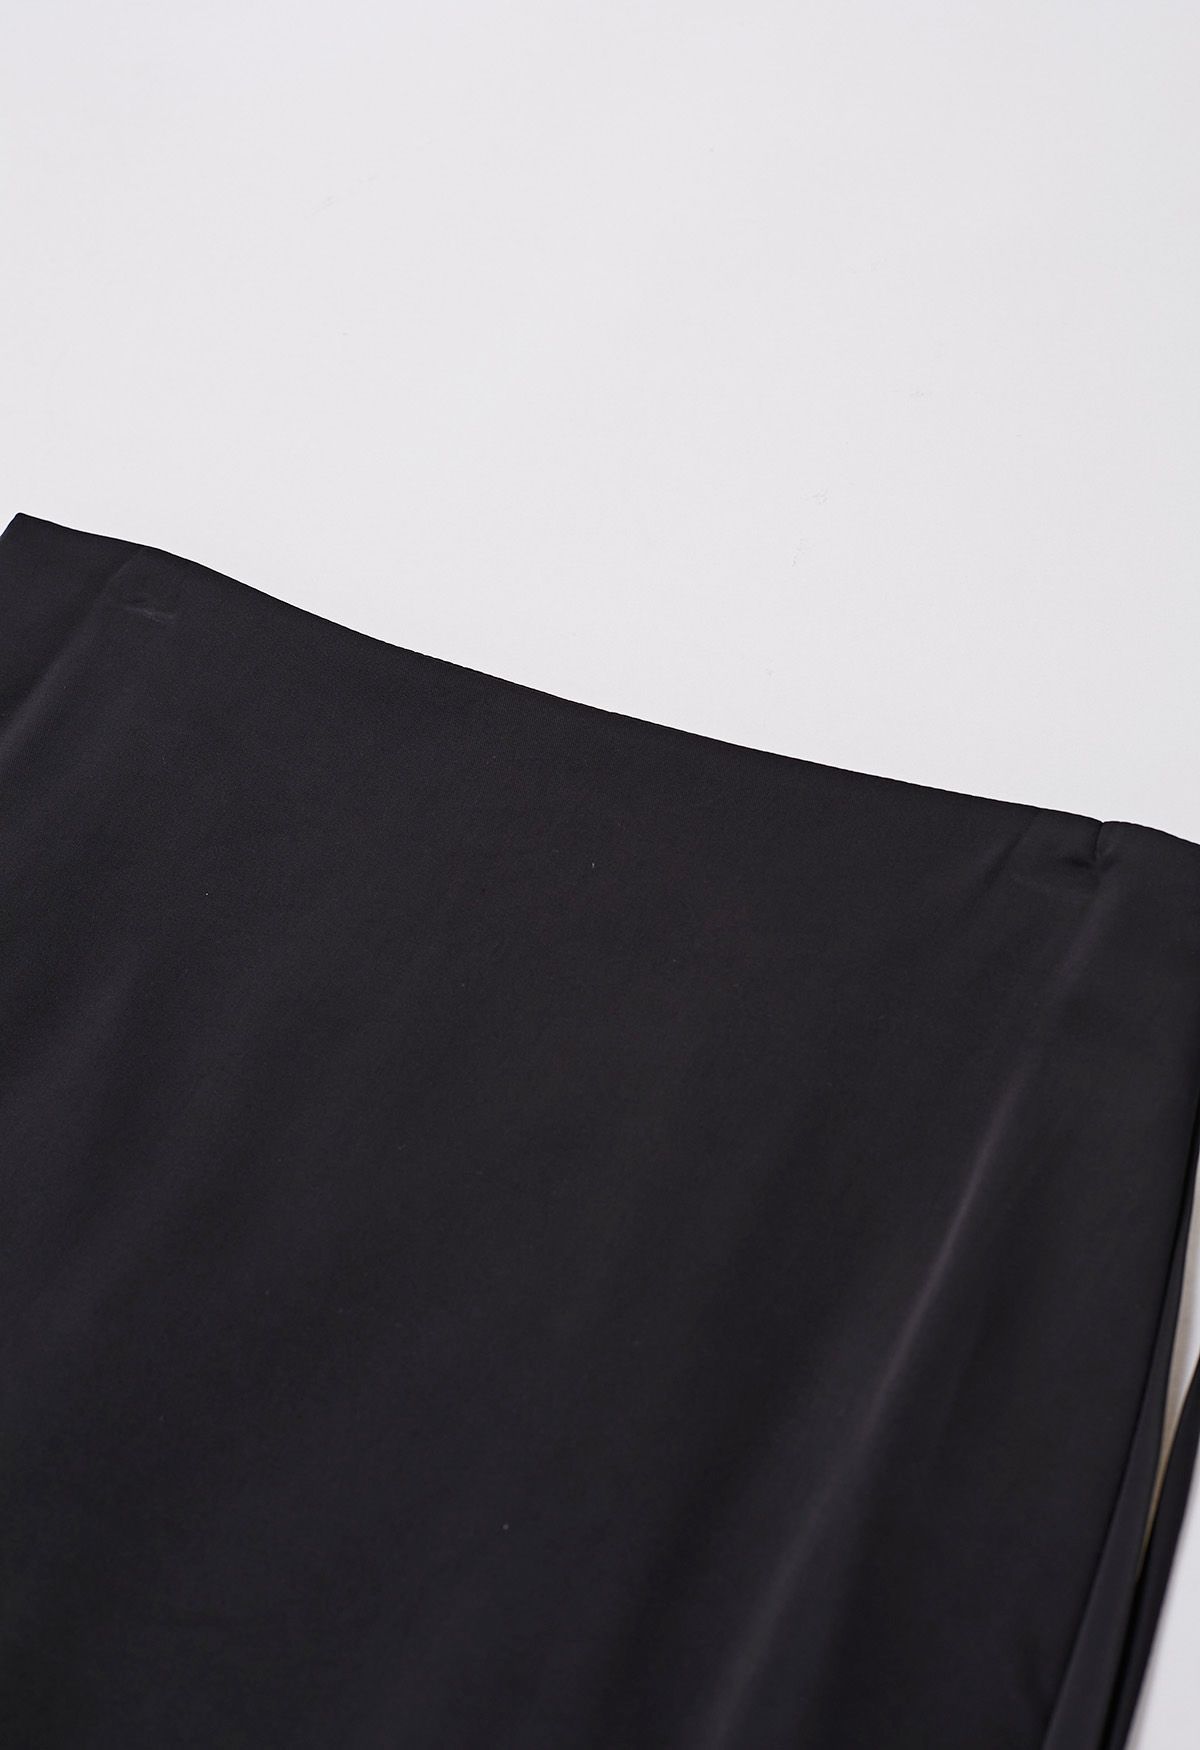 Falda larga de satén con cordón anudado en negro